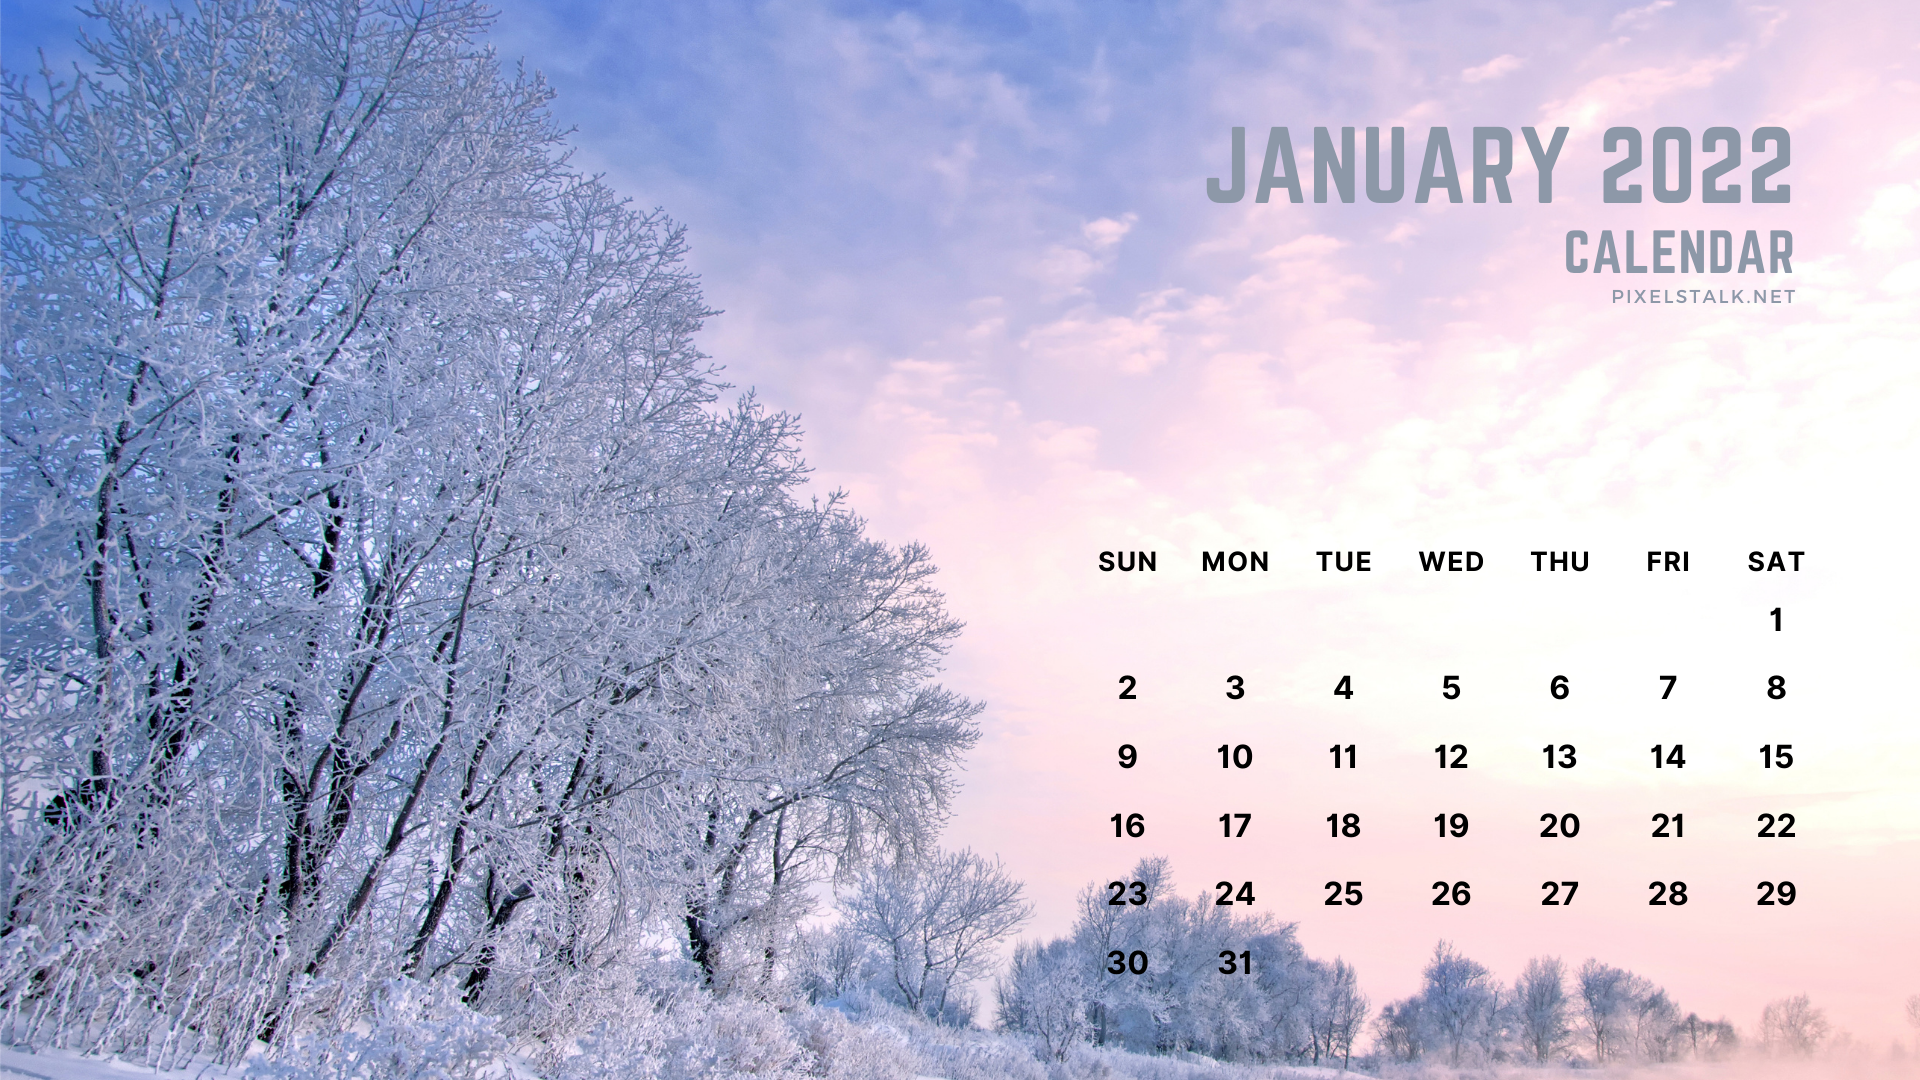 Free download January 2022 Calendar Wallpapers for Desktop: Cập nhật lịch tháng 1 năm 2022 của bạn với các hình nền lịch độc đáo, phong phú và tuyệt đẹp. Hình nền Lịch Tháng 1 Năm 2022 tại đây sẽ giúp bạn bắt đầu năm mới với những ấn tượng đẹp đầy tràn tinh thần.